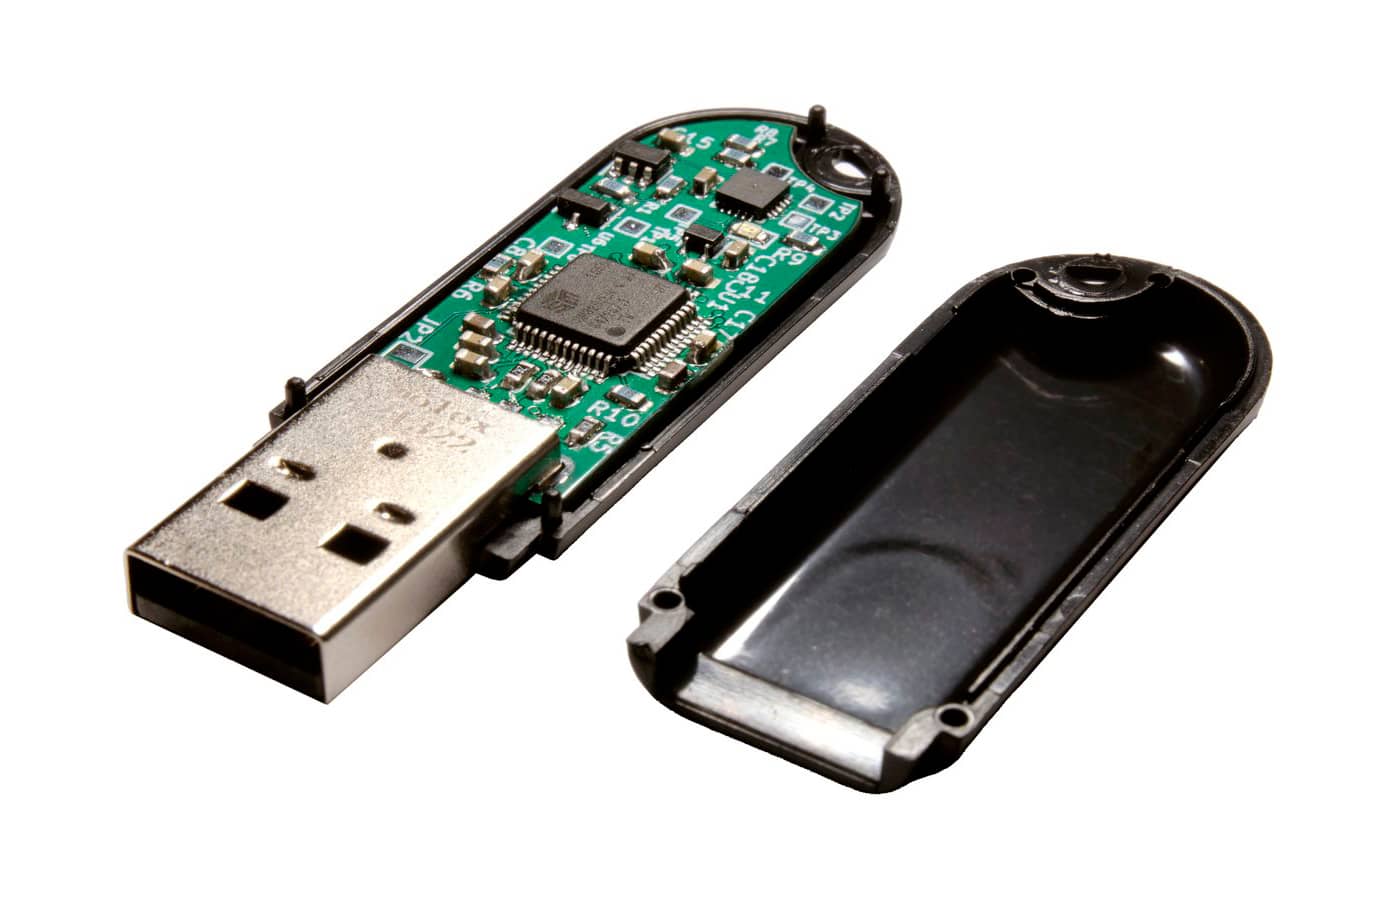 Створено флеш-накопичувач Ovrdrive USB з функцією фізичного самознищення